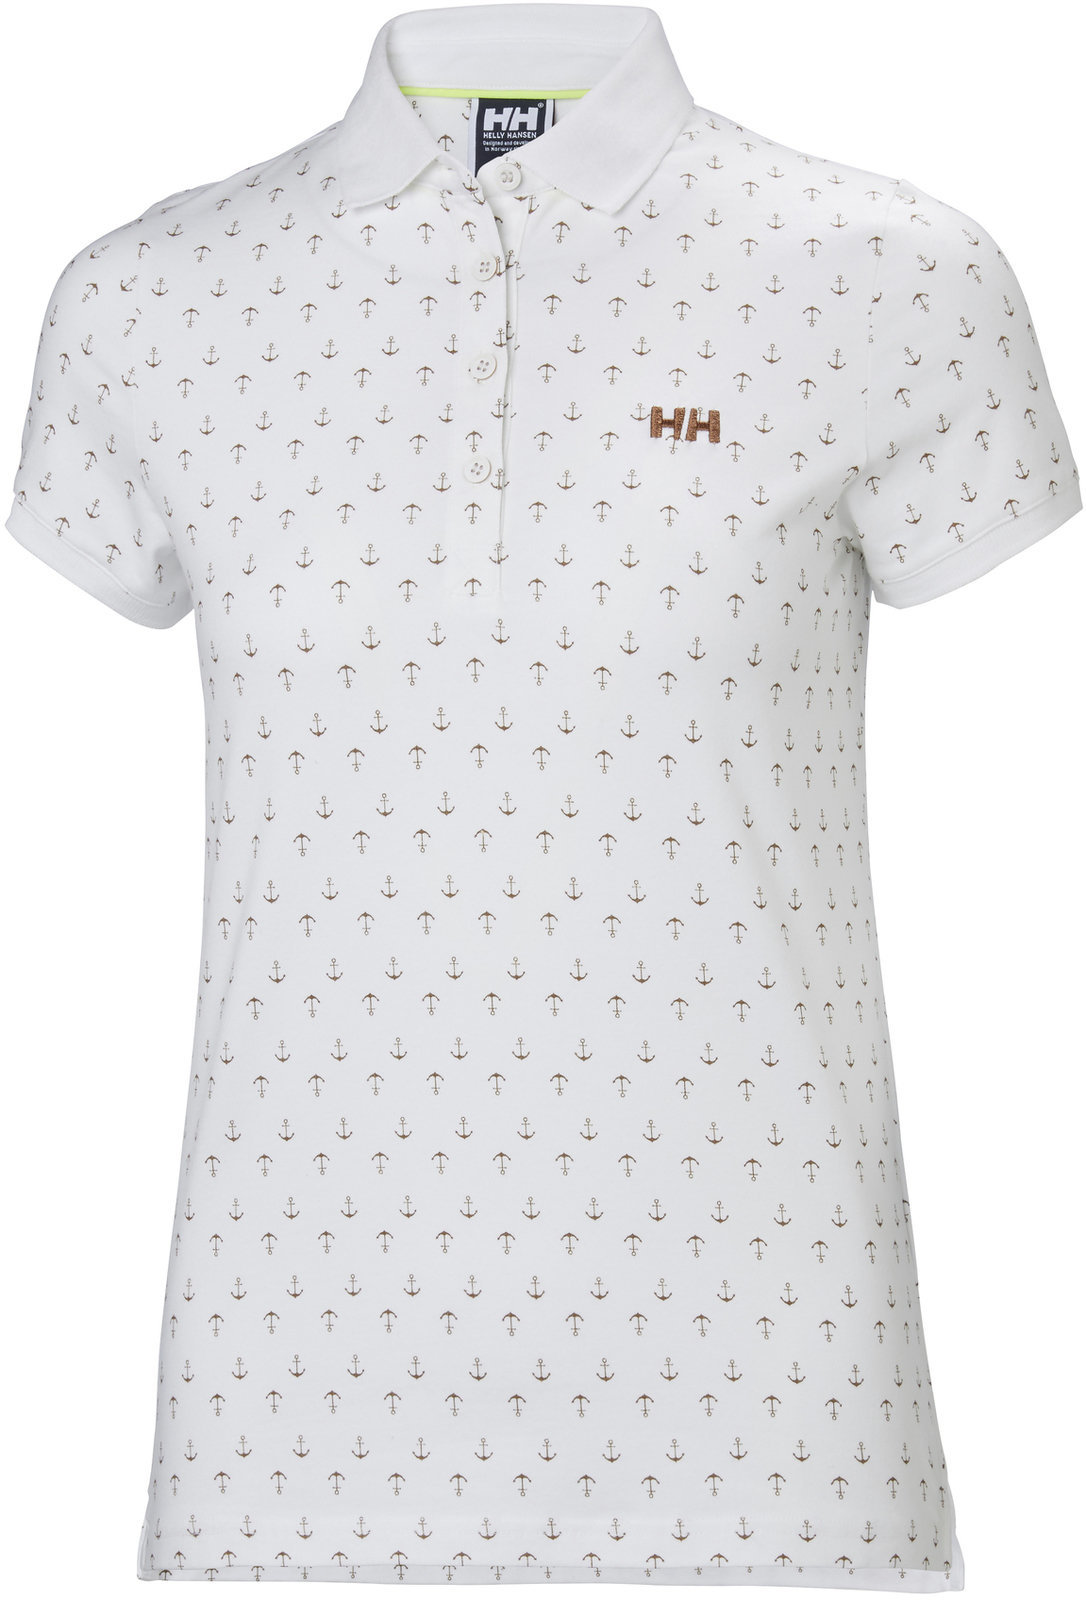 Shirt Helly Hansen W Naiad Breeze Polo White Anchor - XL